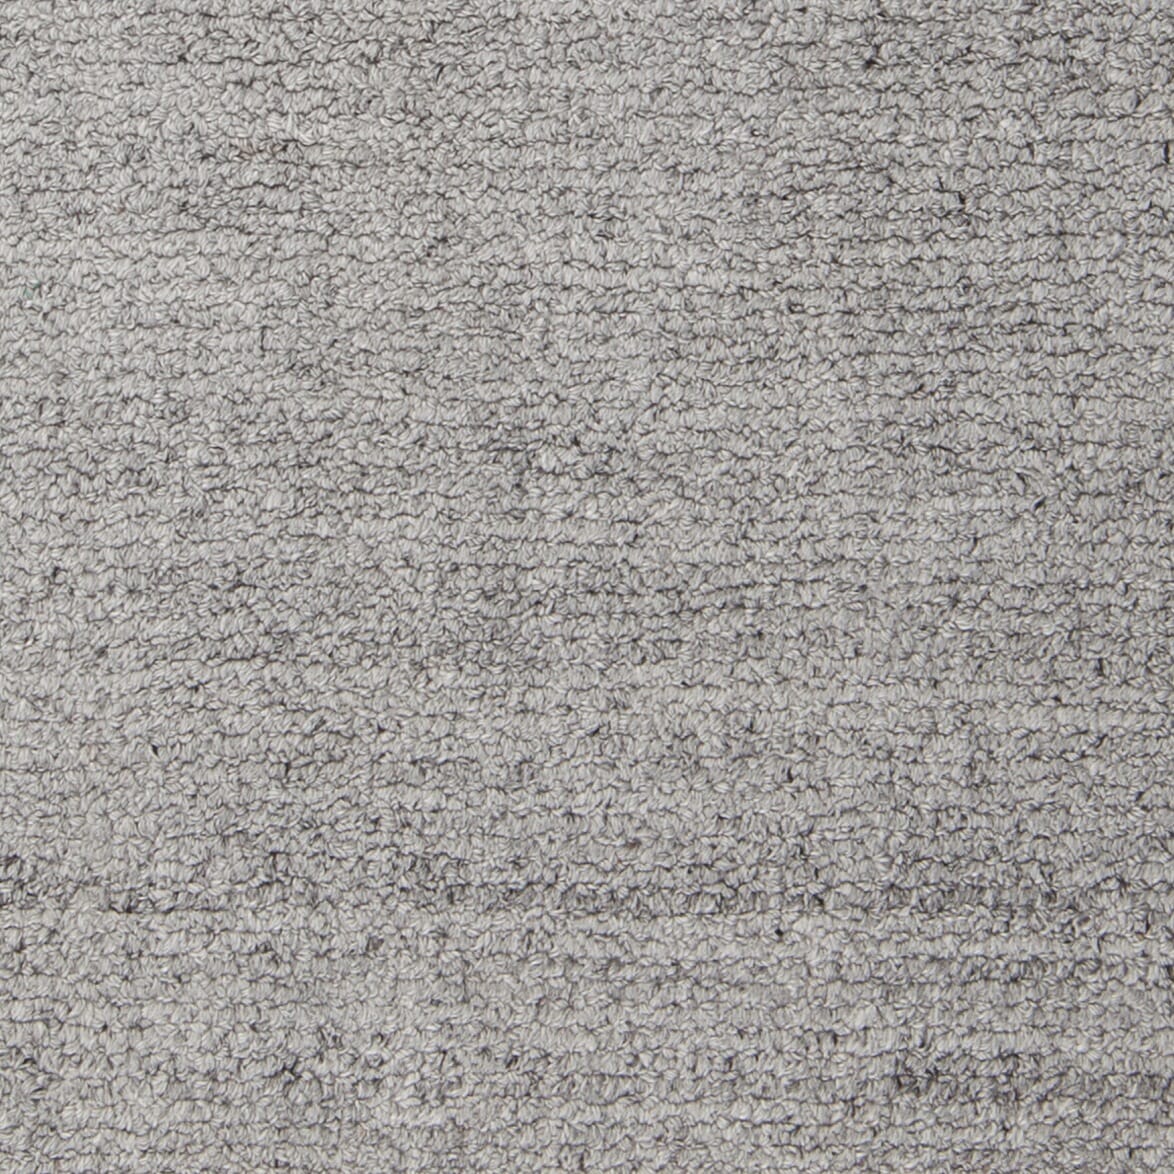 Chandra Uma Uma-48301 Grey Solid Color Area Rug